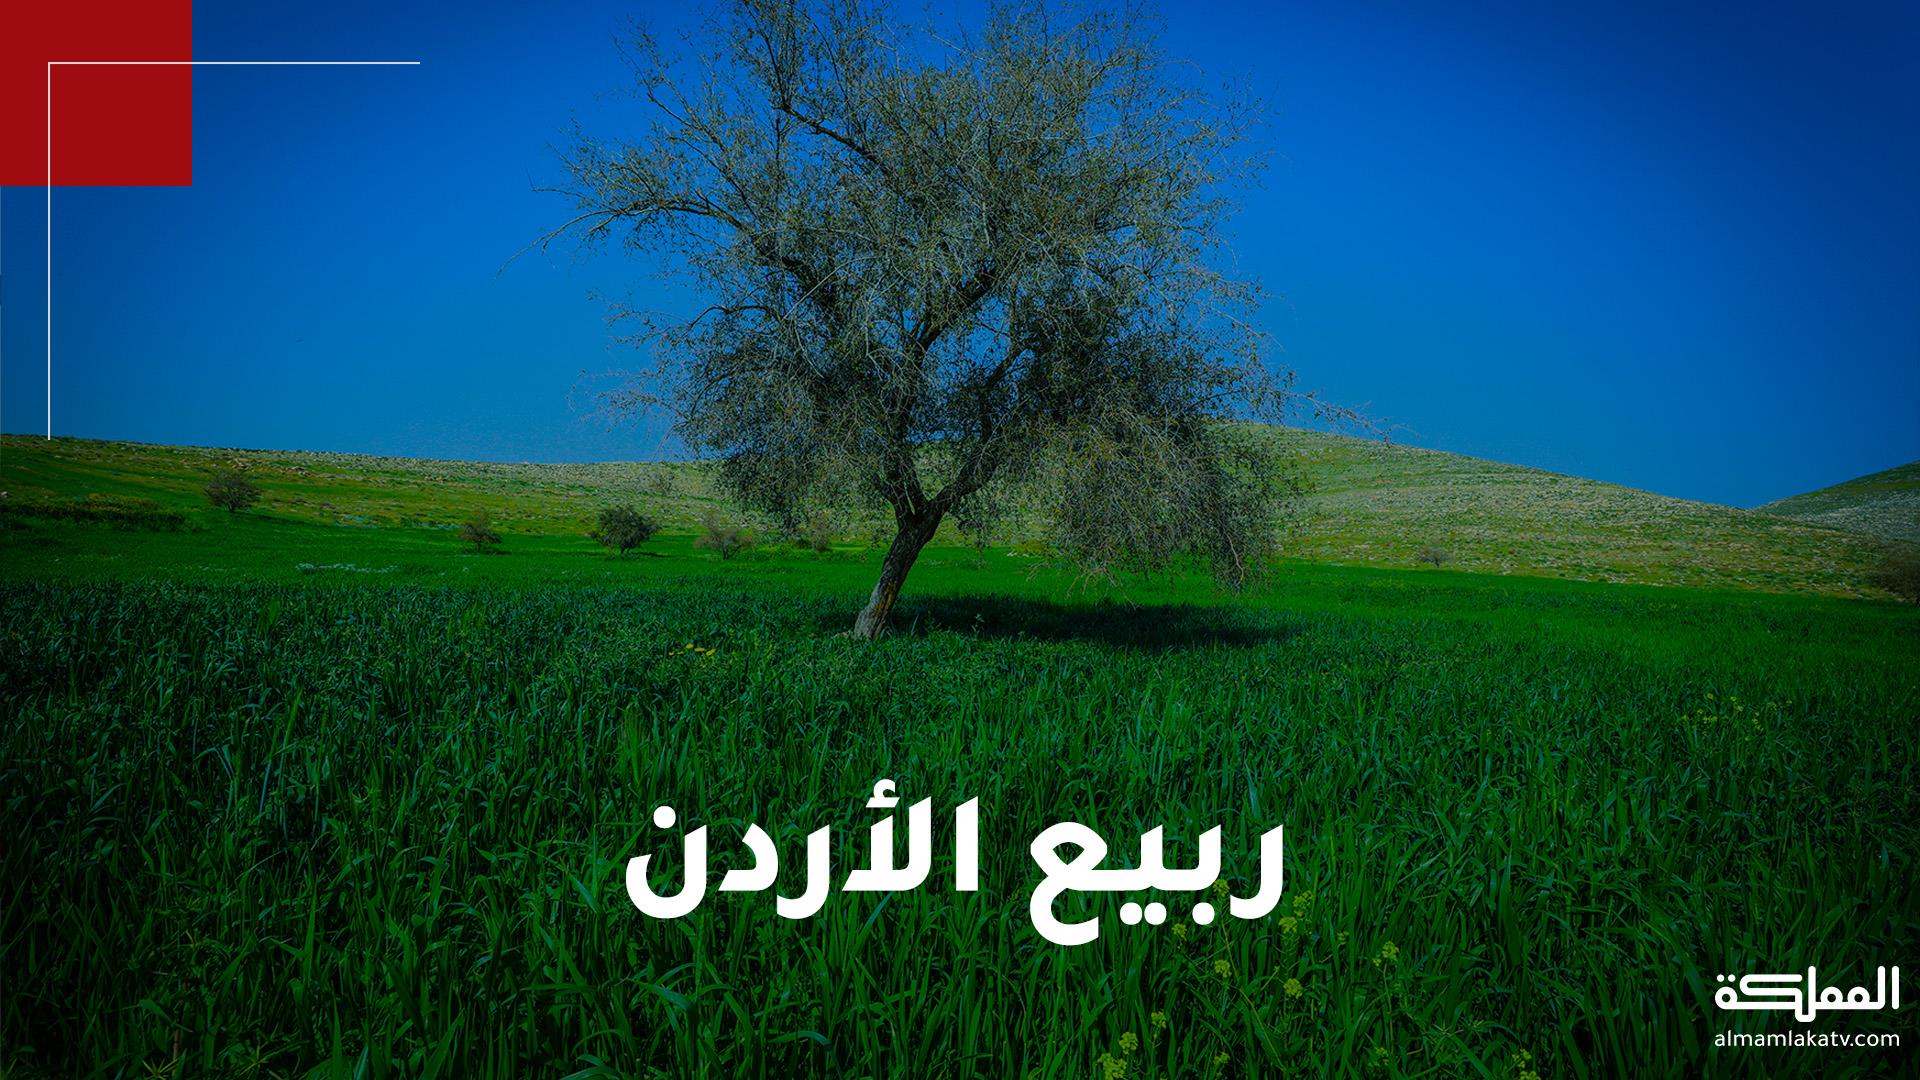 الربيع يضفي جمالا إضافيا على المناظر الخلابة في مناطق عدة في الأردن